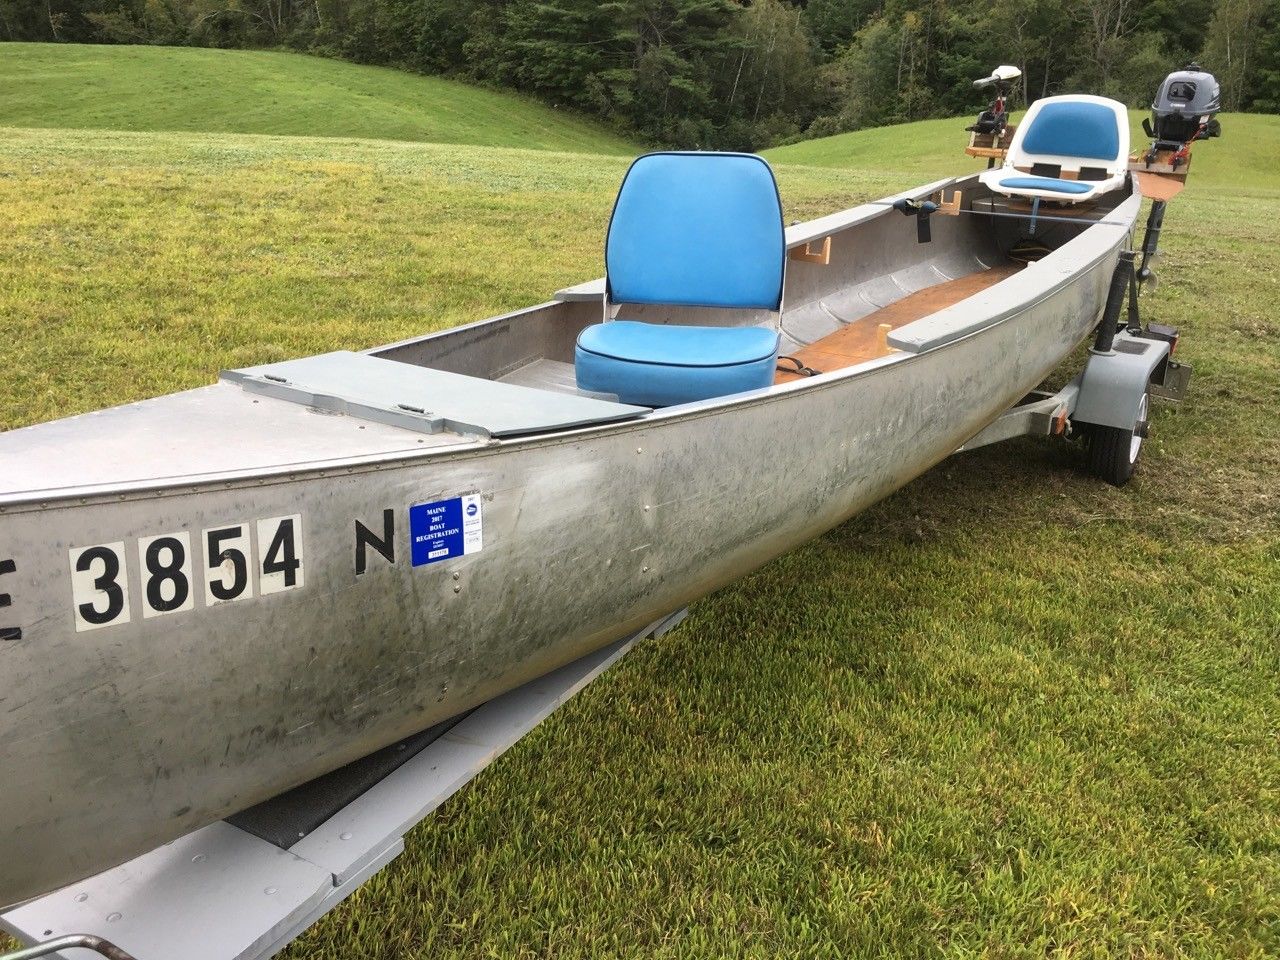 grumman 20' aluminum canoe 1960 for sale for $1,600